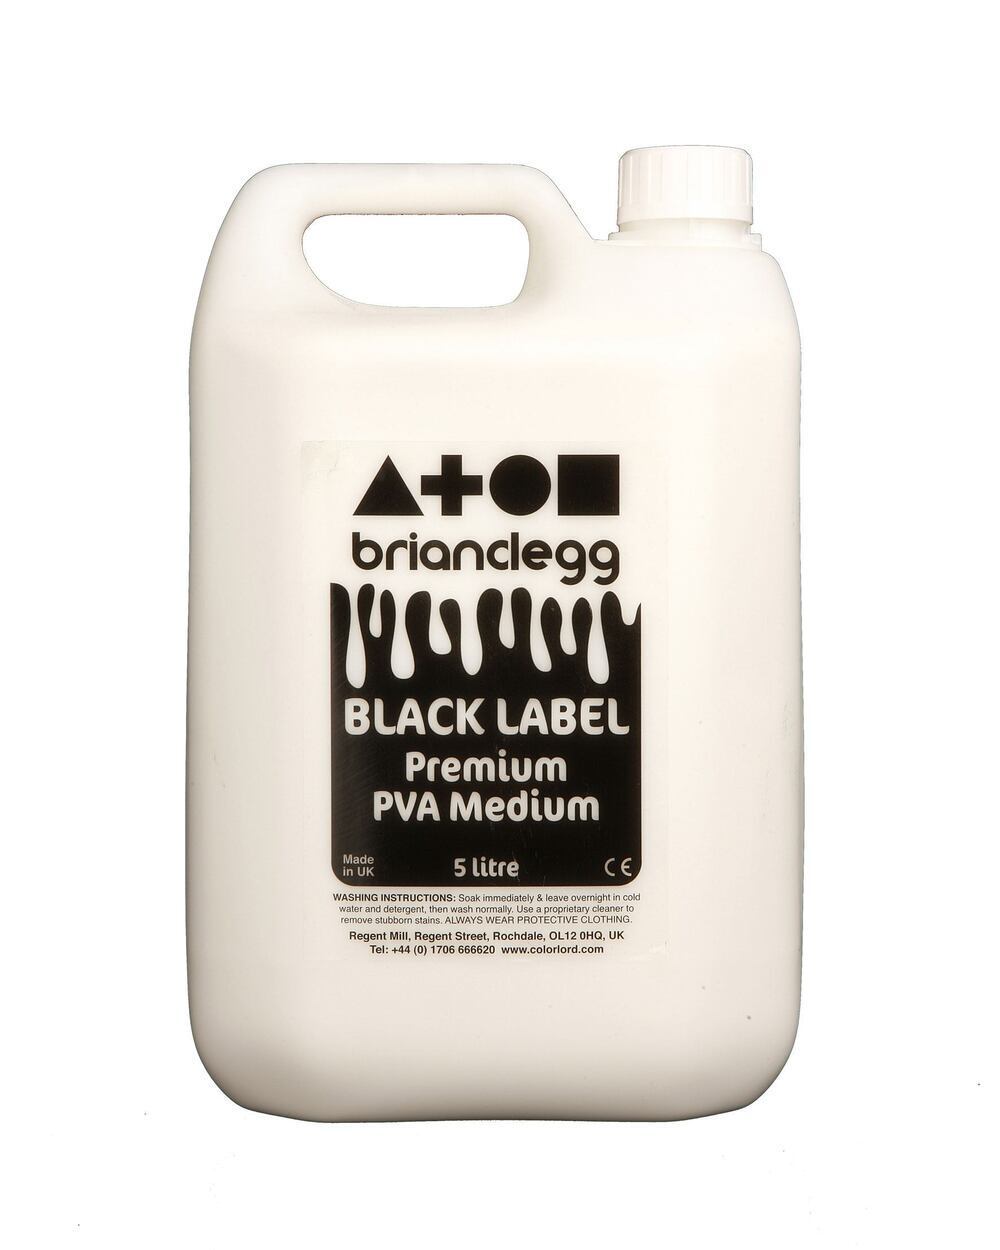 Black Label Premium Pva Medium 5 Litre